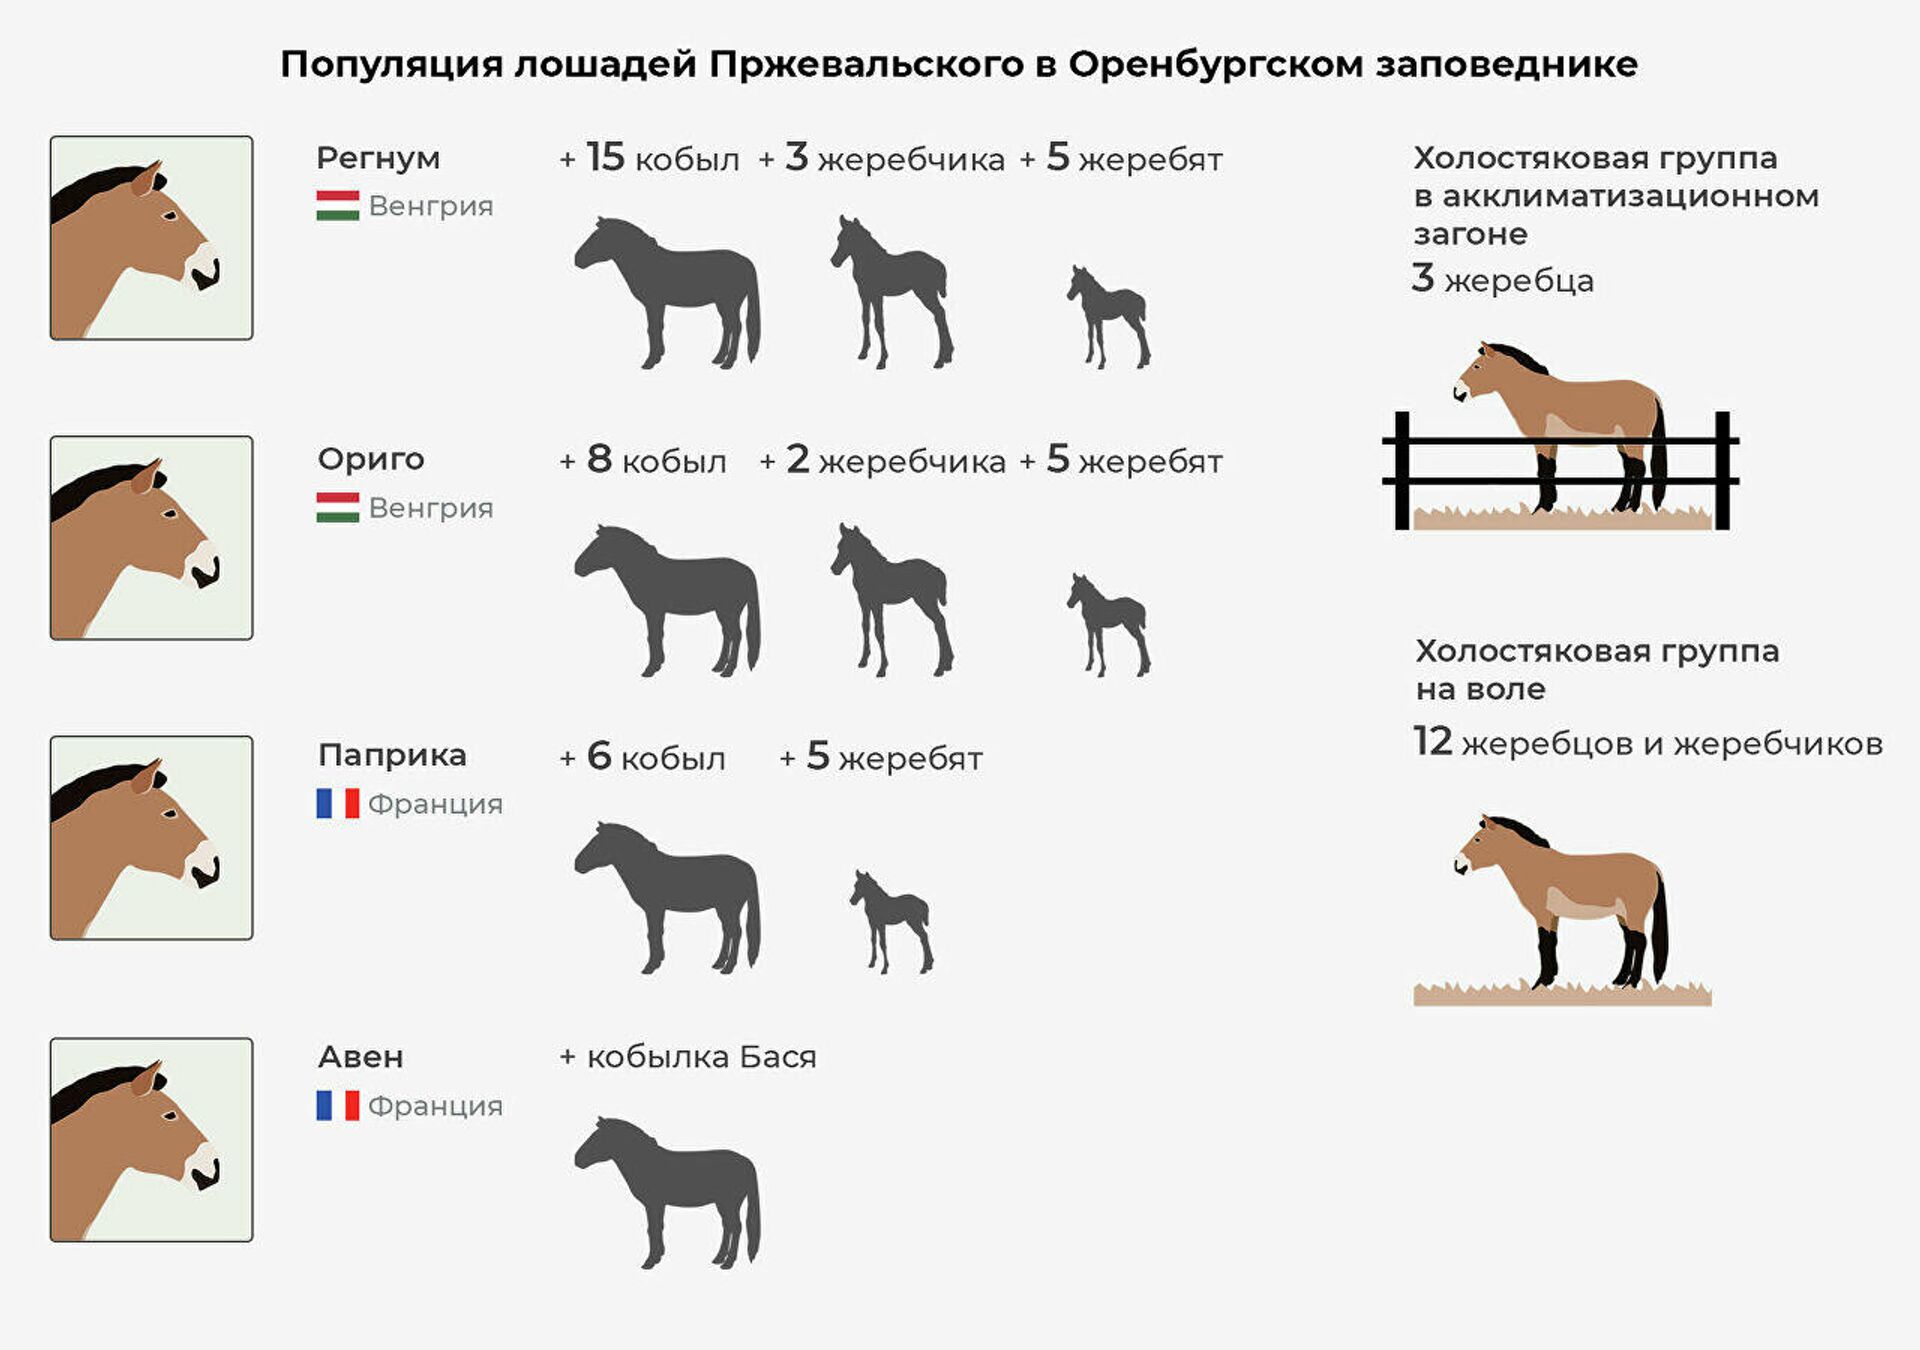 Популяция лошадей Пржевальского в Оренбургском заповеднике  - Sputnik Latvija, 1920, 05.12.2021